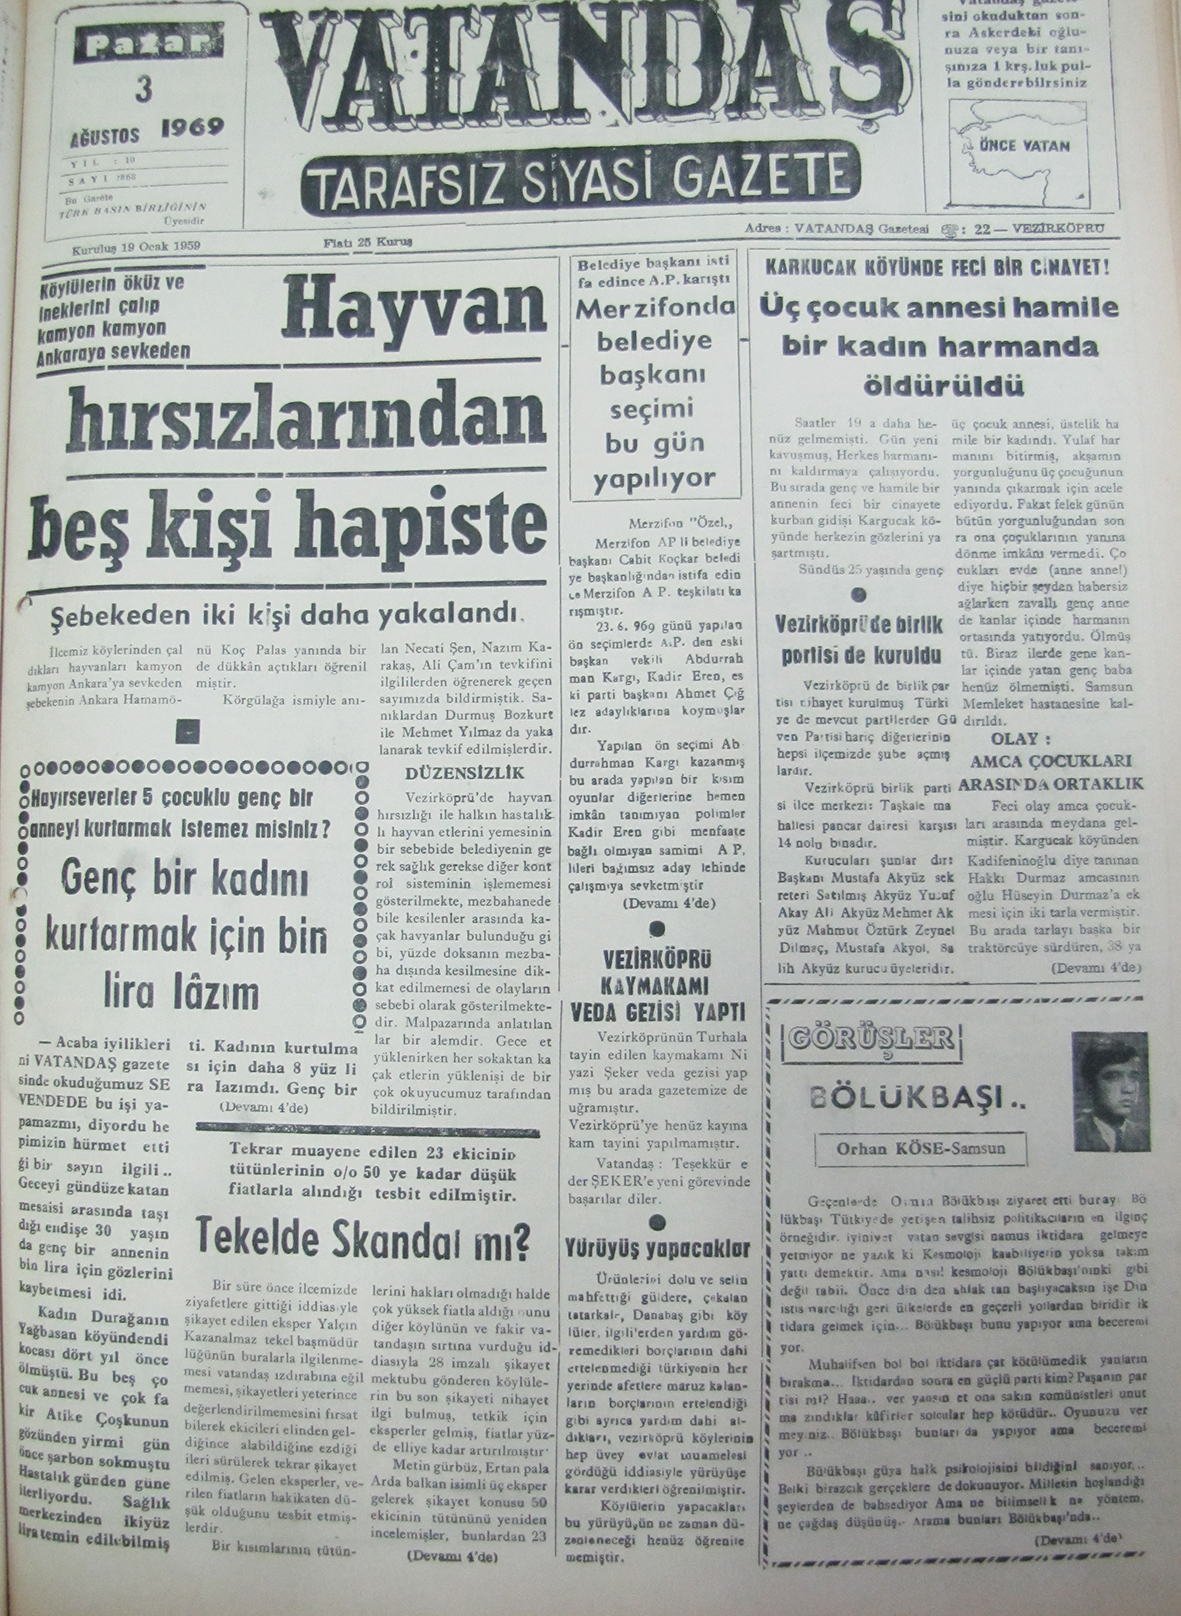 Köylülerin öküz ve ineklerini çalıp kamyon kamyon Ankara’ya sevk eden Hayvan Hırsızlarından Beş Kişi Hapiste 3 Ağustos 1969 Pazar